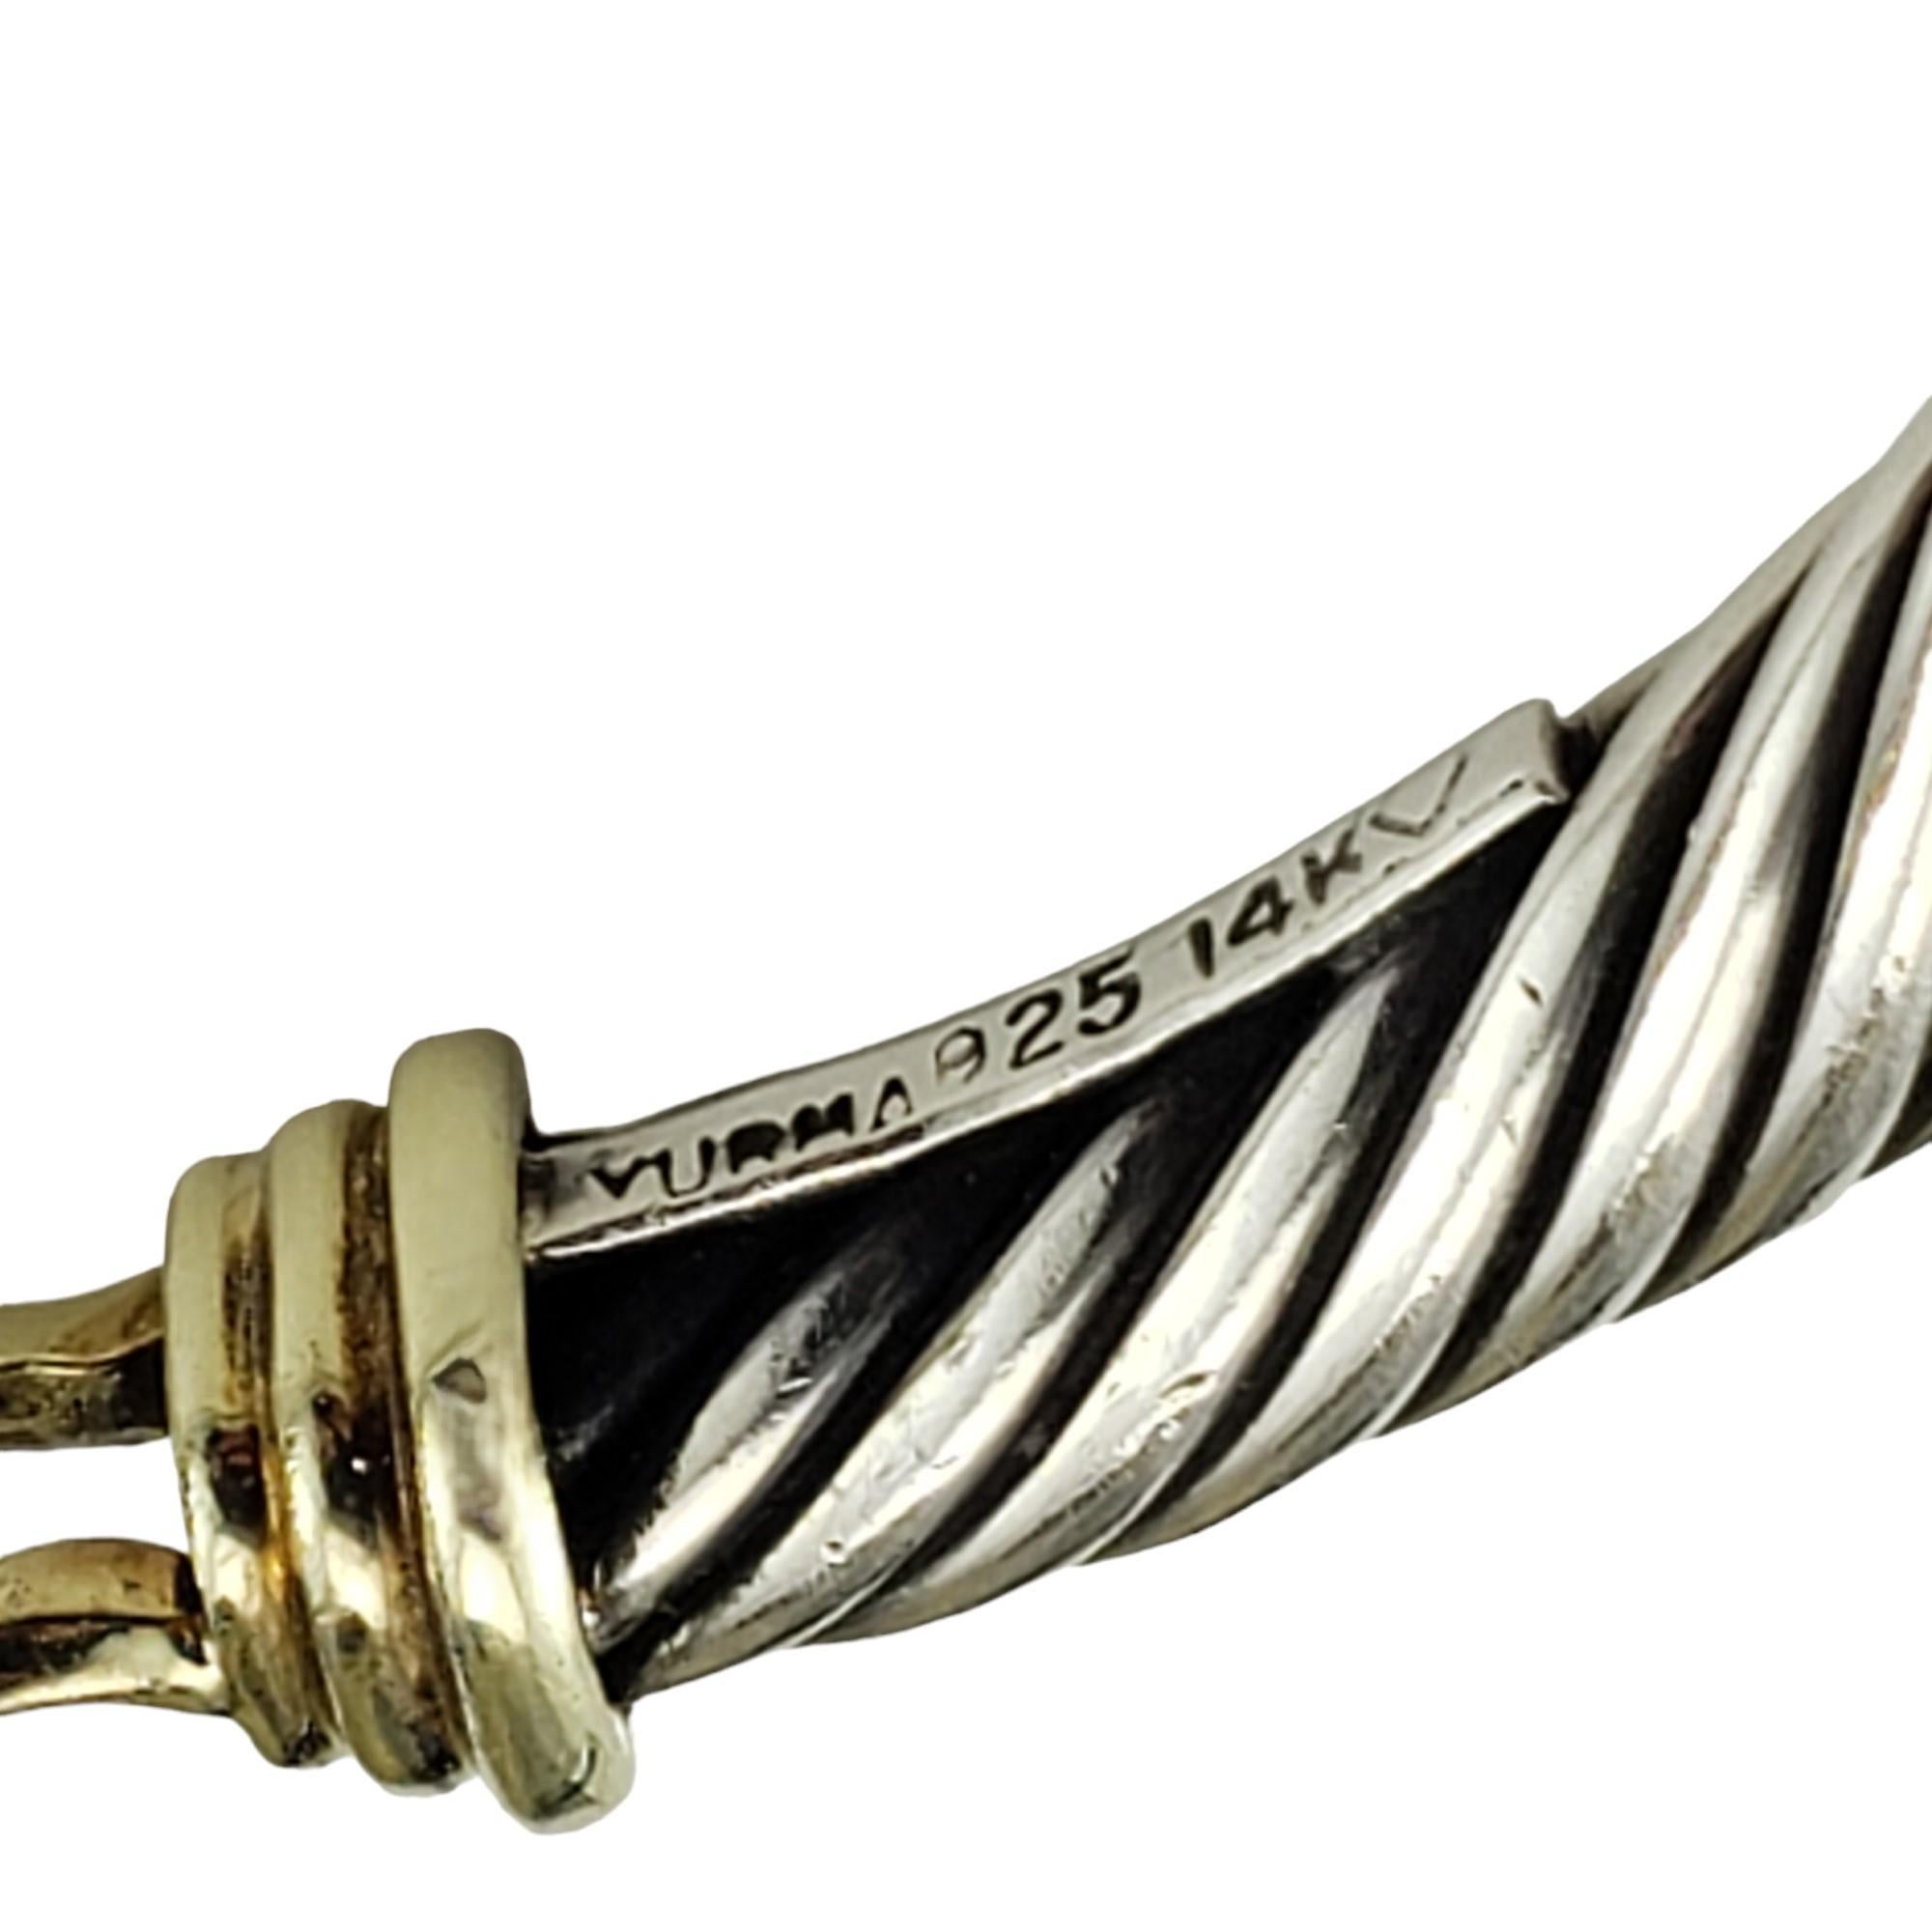 David Yurman Sterling Silver & 14K Yellow Gold Buckle Bracelet #17083 For Sale 1